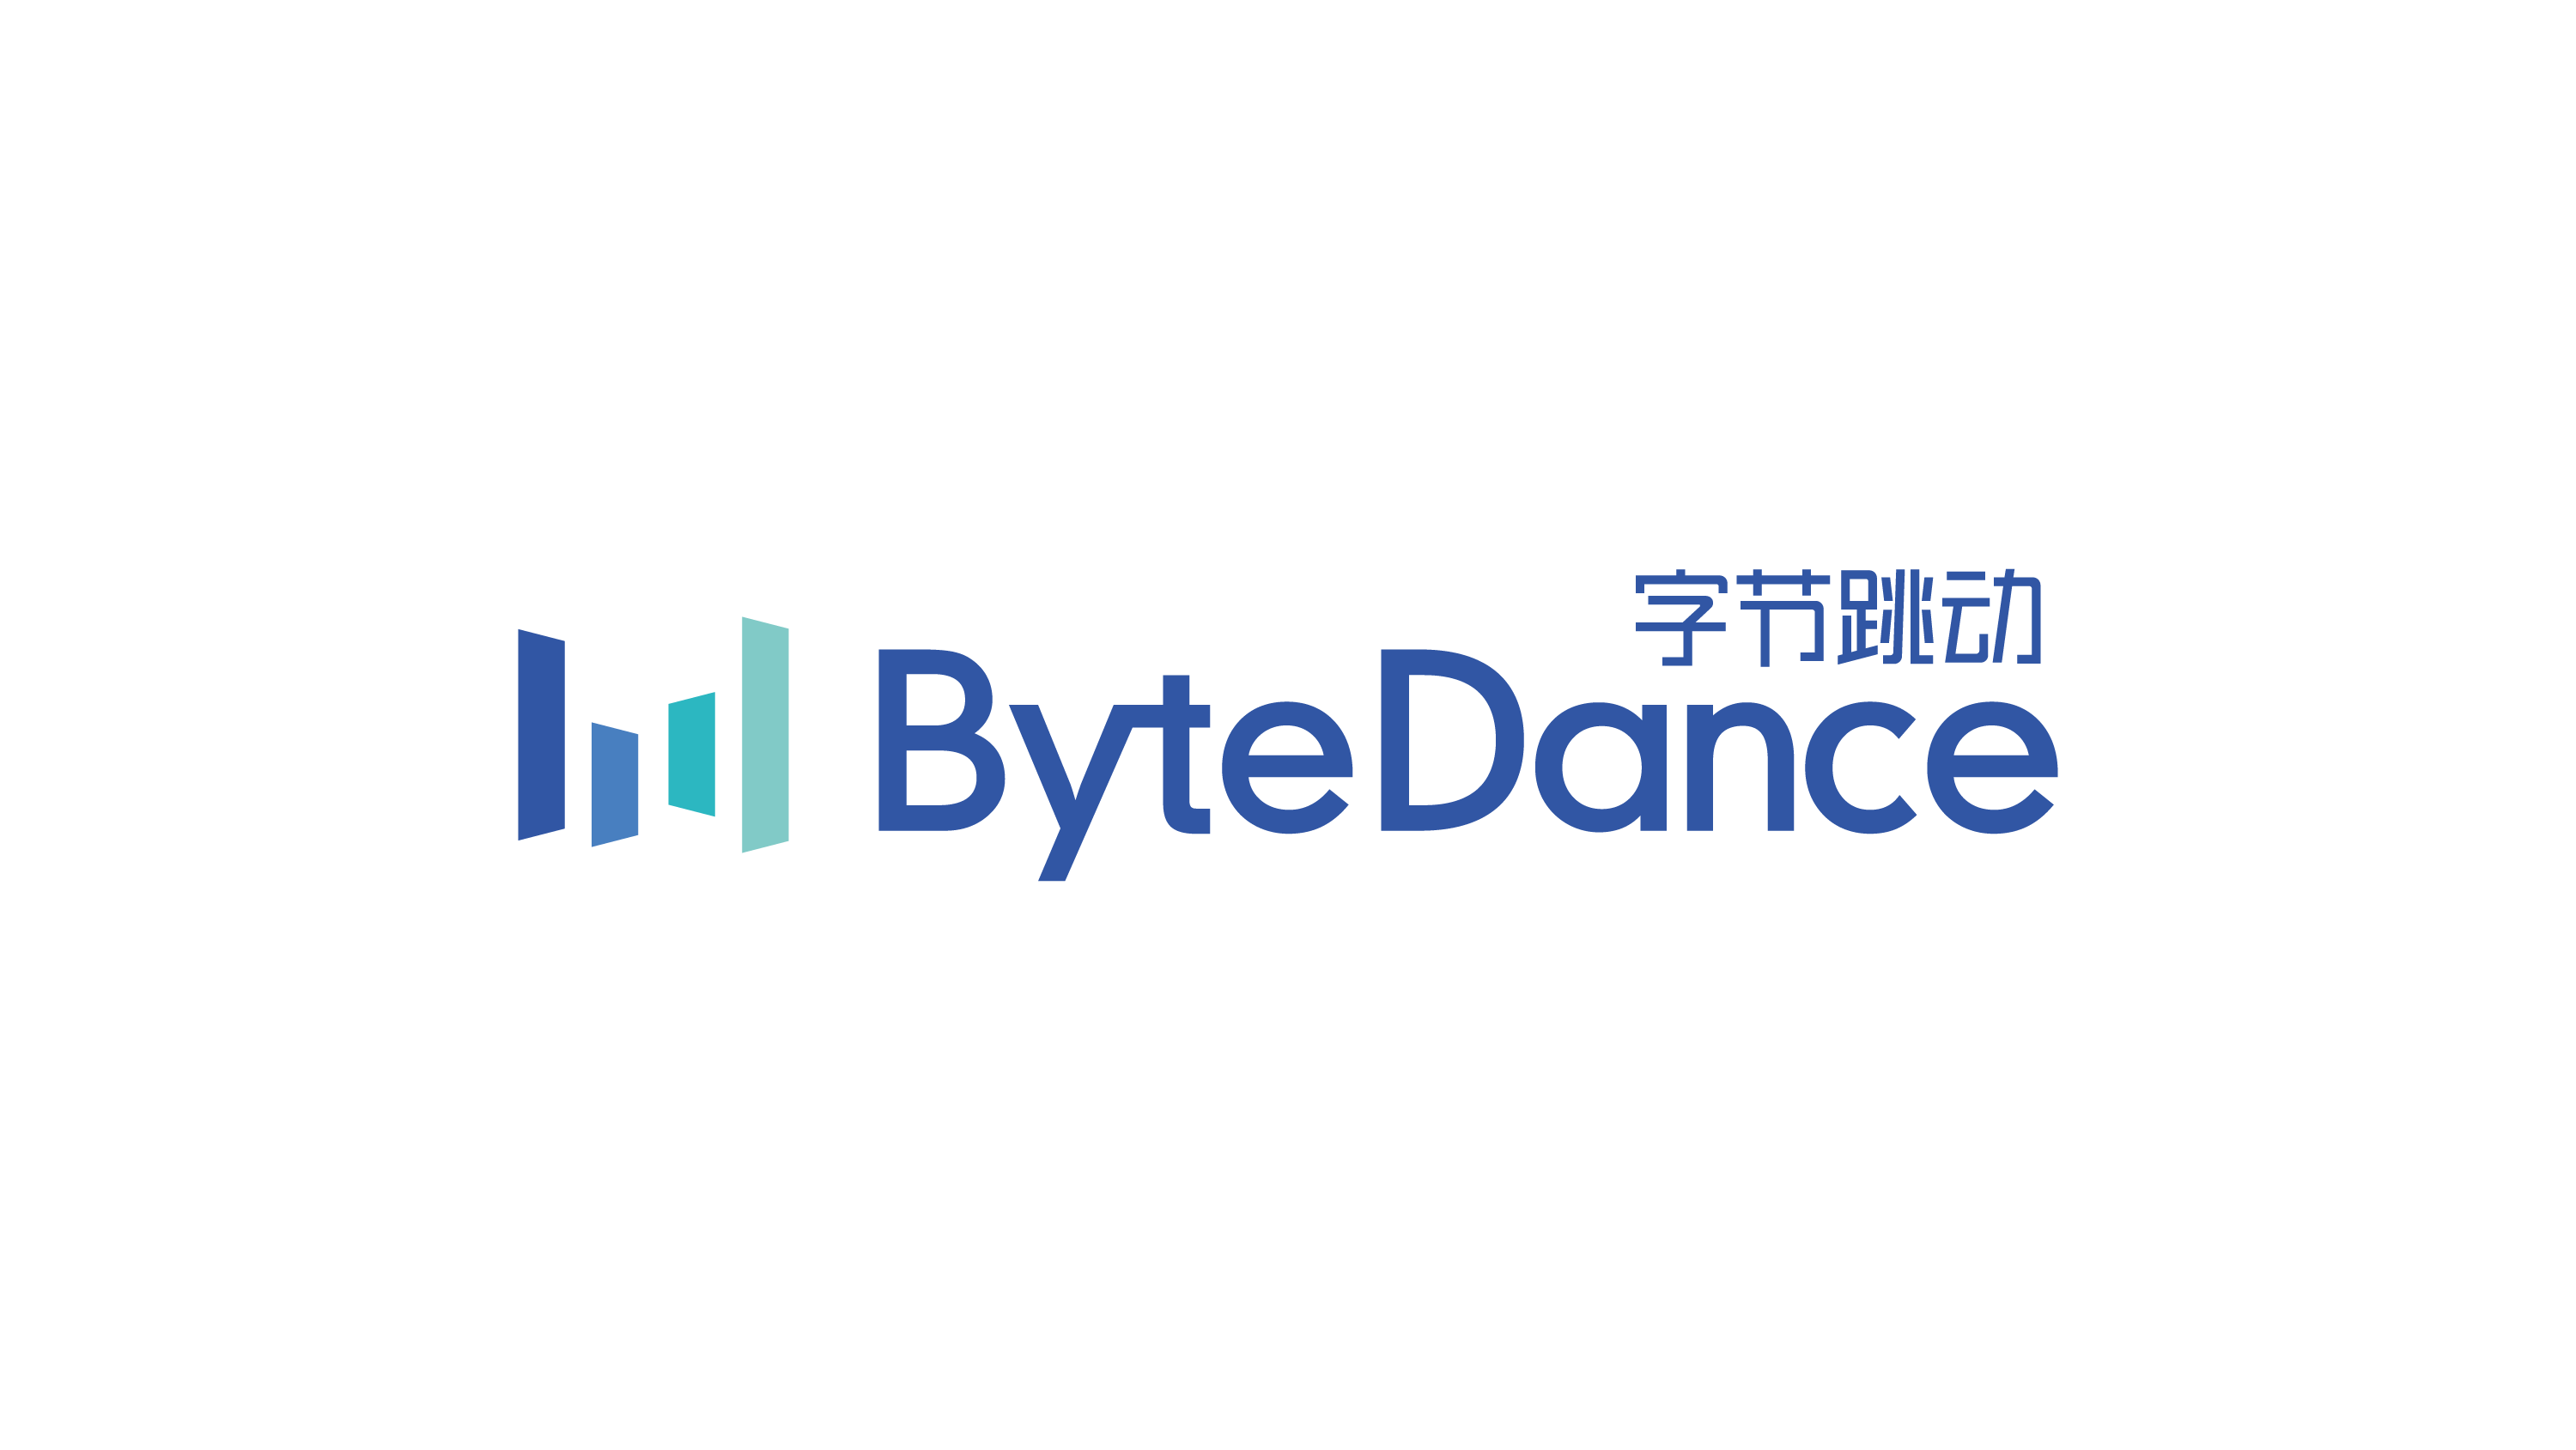 bytedance-logo-jpg-03 - IAB Tech Lab